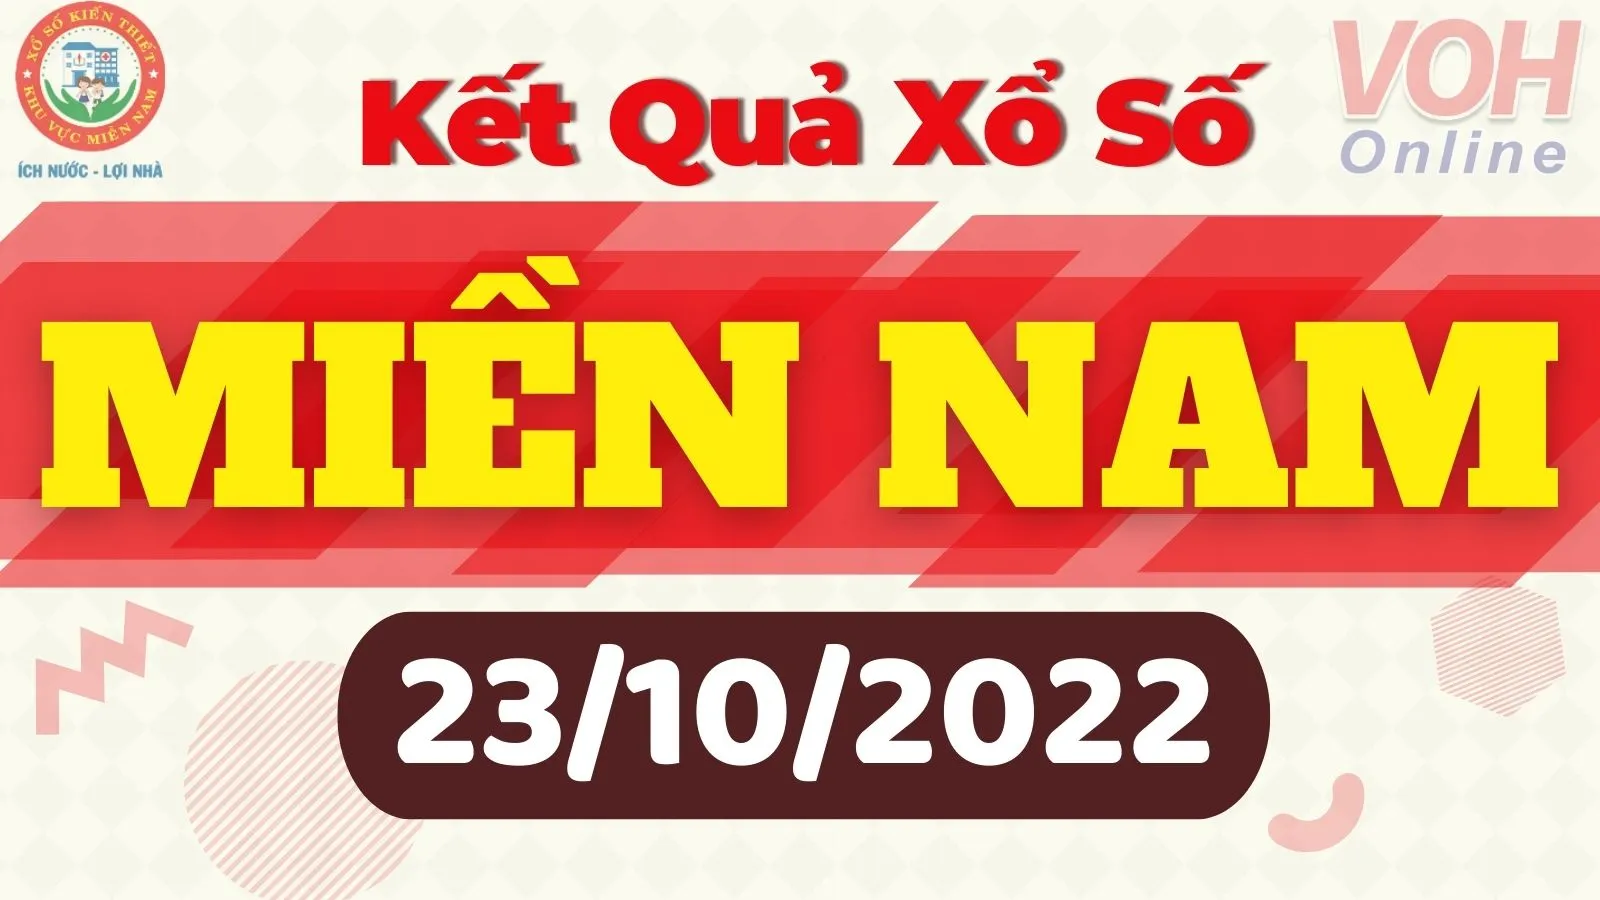 Xổ số miền Nam hôm nay - XSMN 23/10 - SXMN 23/10/2022 - Kết quả xổ số hôm nay ngày 23 tháng 10